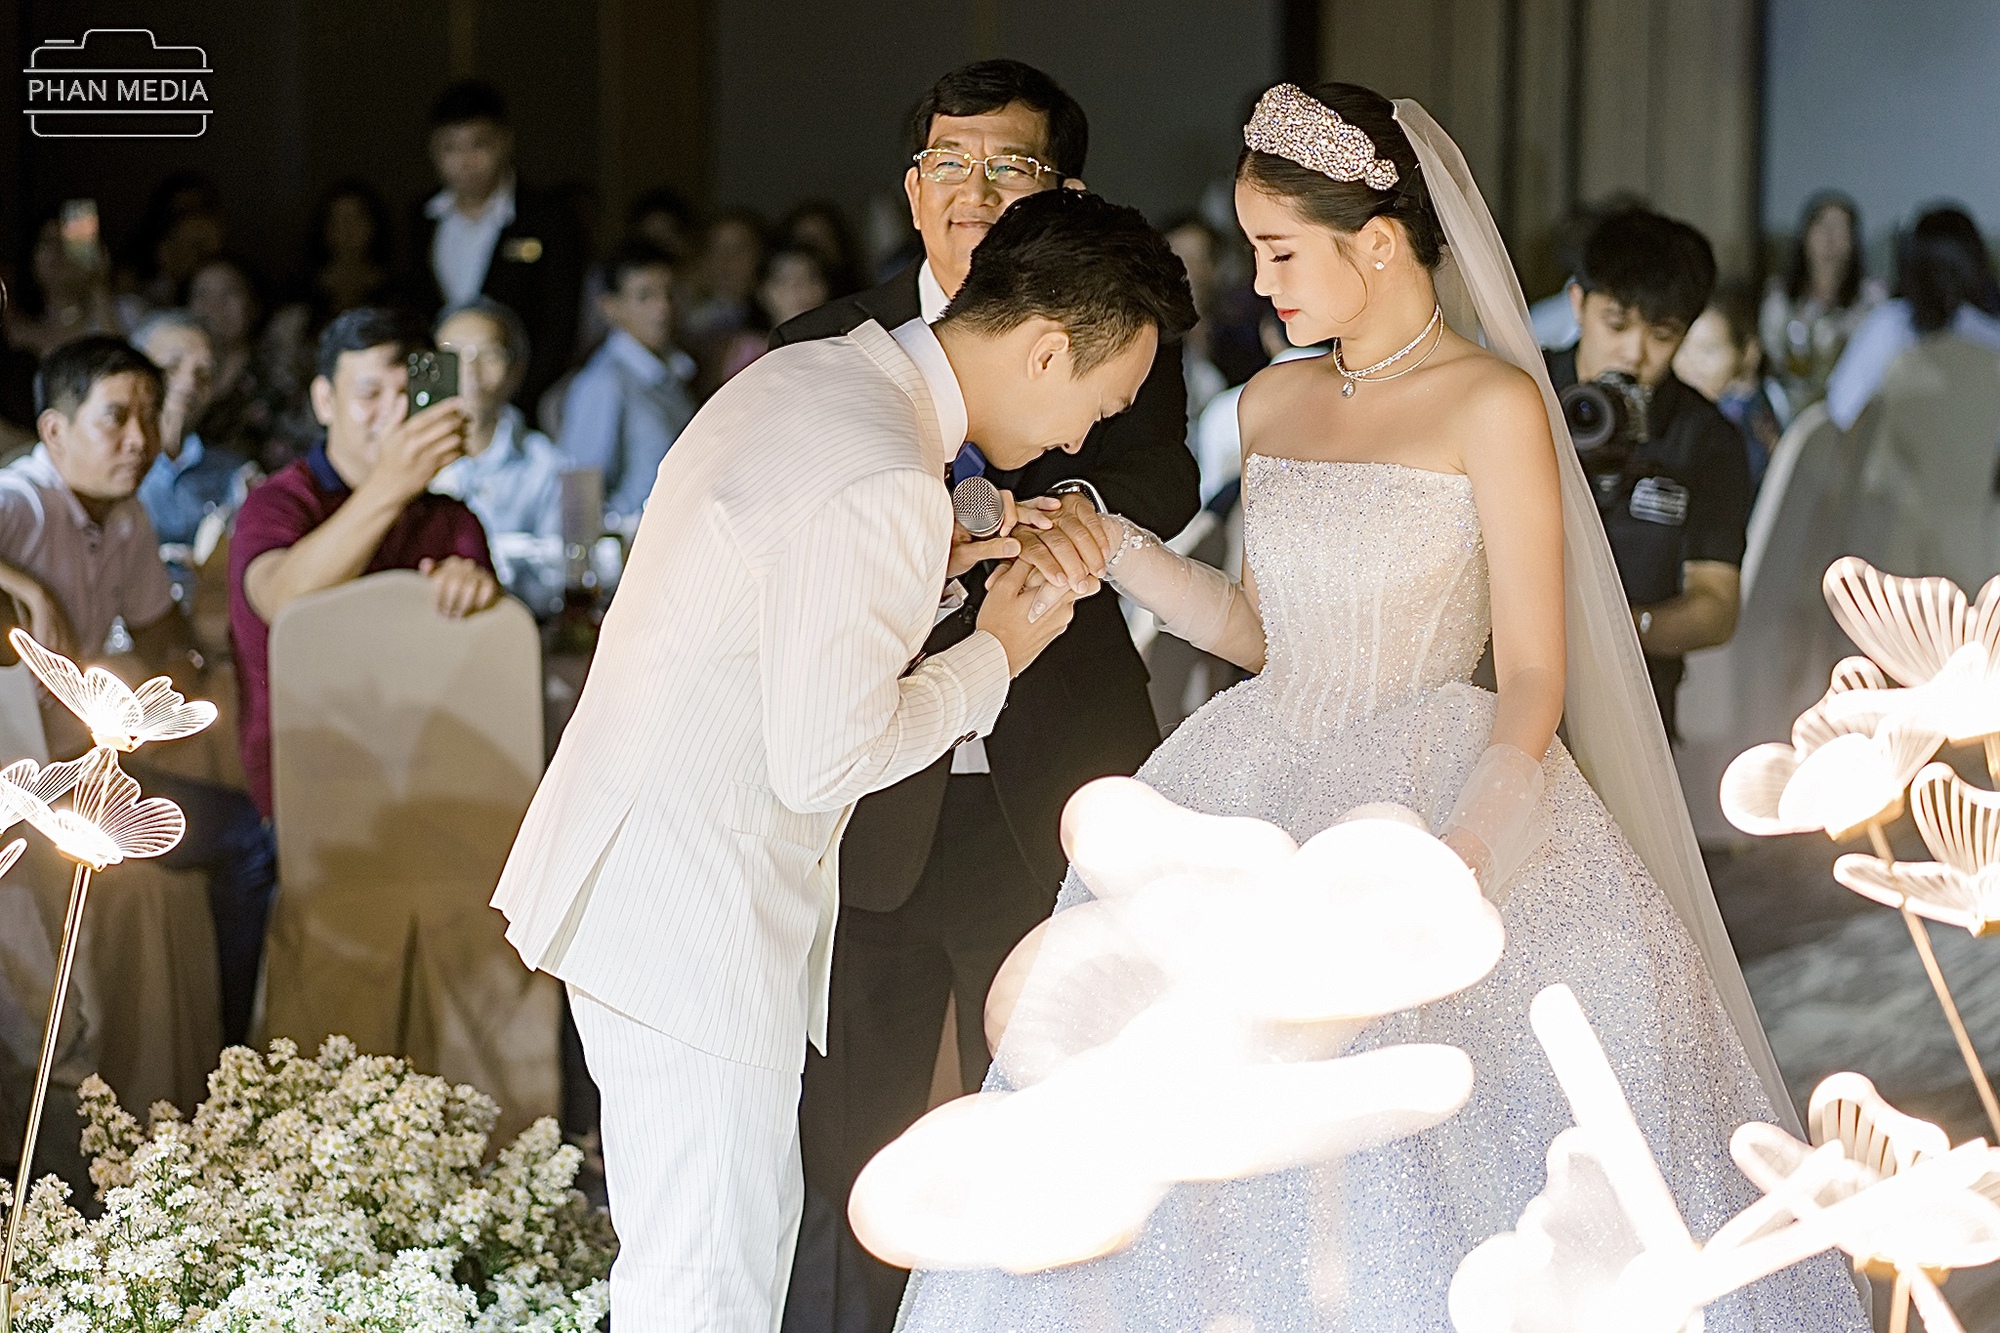 Ngân Anh khoe nhan sắc ngọt ngào, khiêu vũ cùng chồng biên tập viên trong đám cưới ở Quy Nhơn   - Ảnh 3.